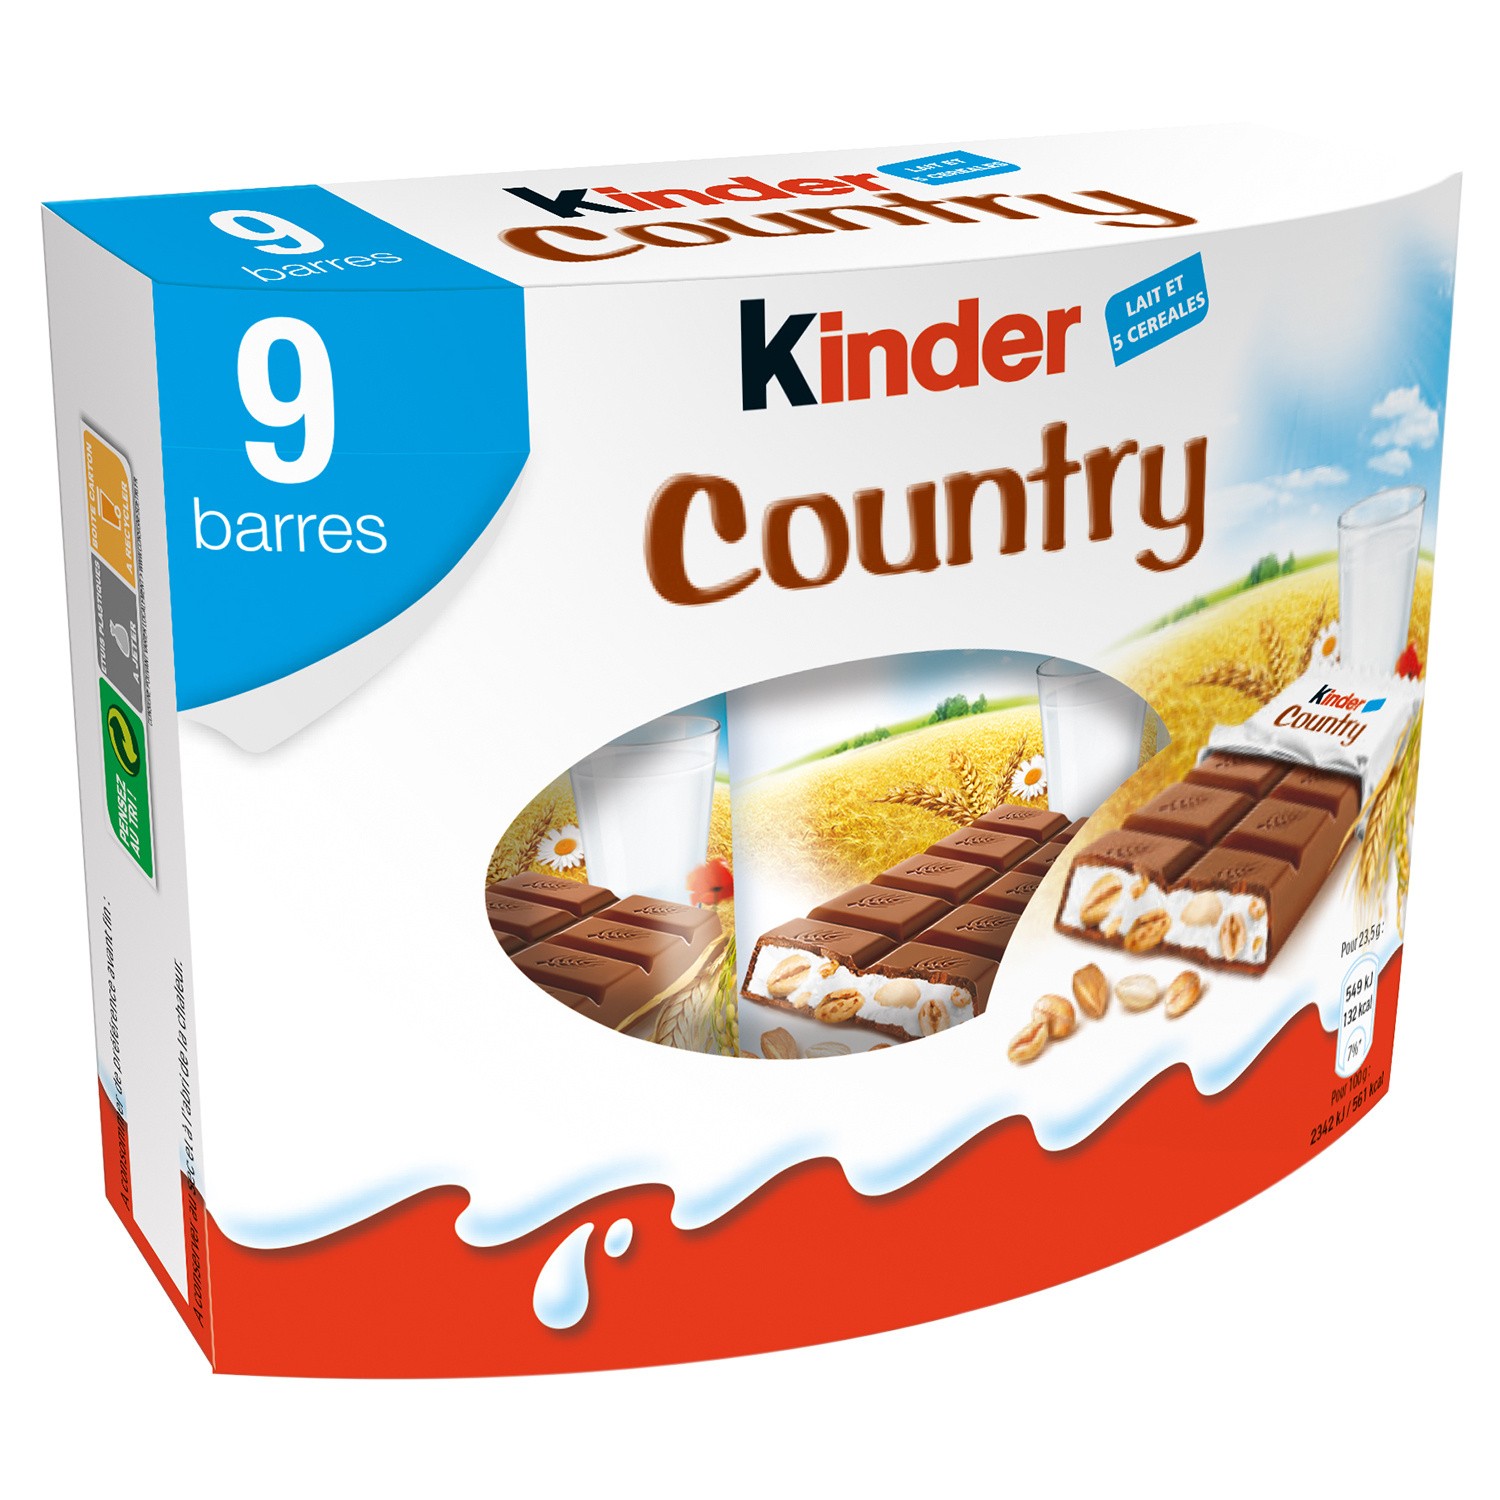 9 barres au chocolat au lait et céréales Kinder Country